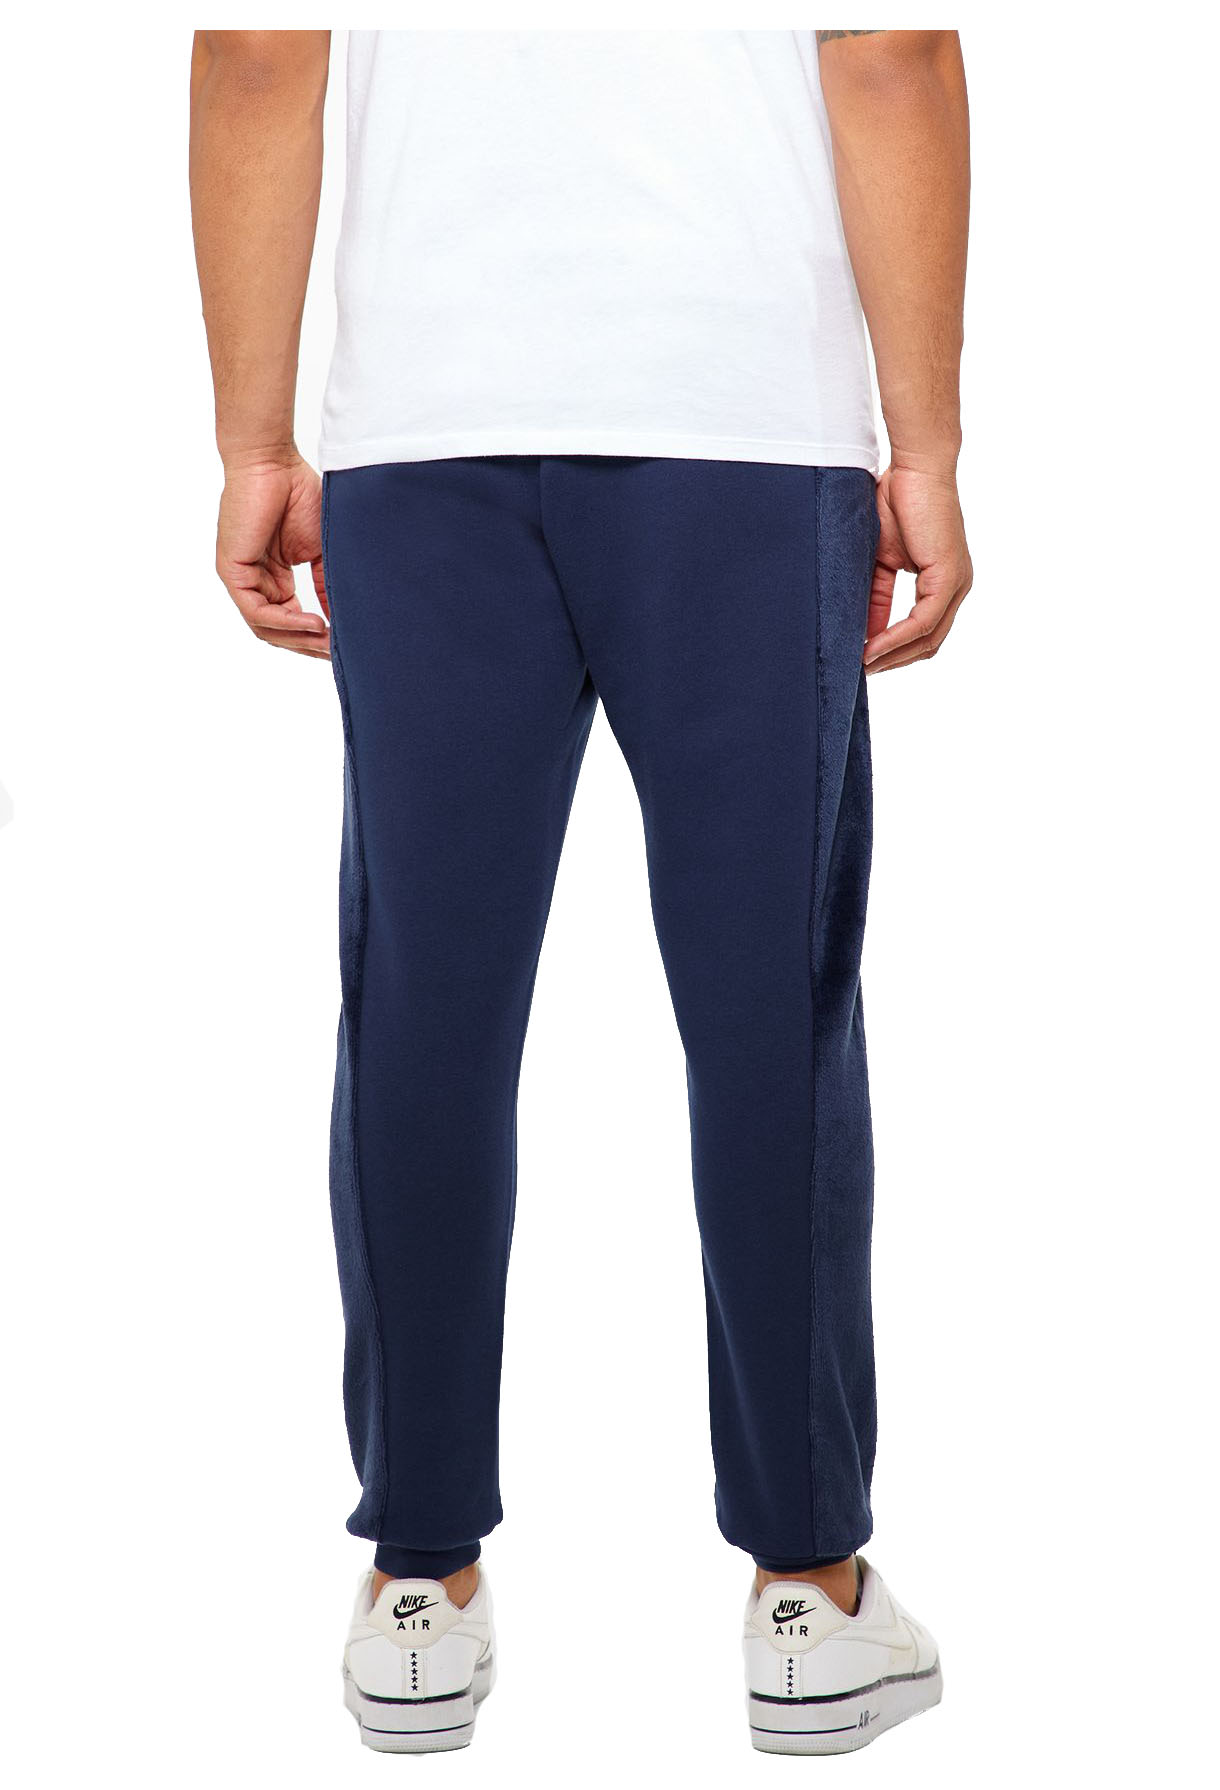 Nike Men's Velour Sportwear Casual Sweat Pants | eBay